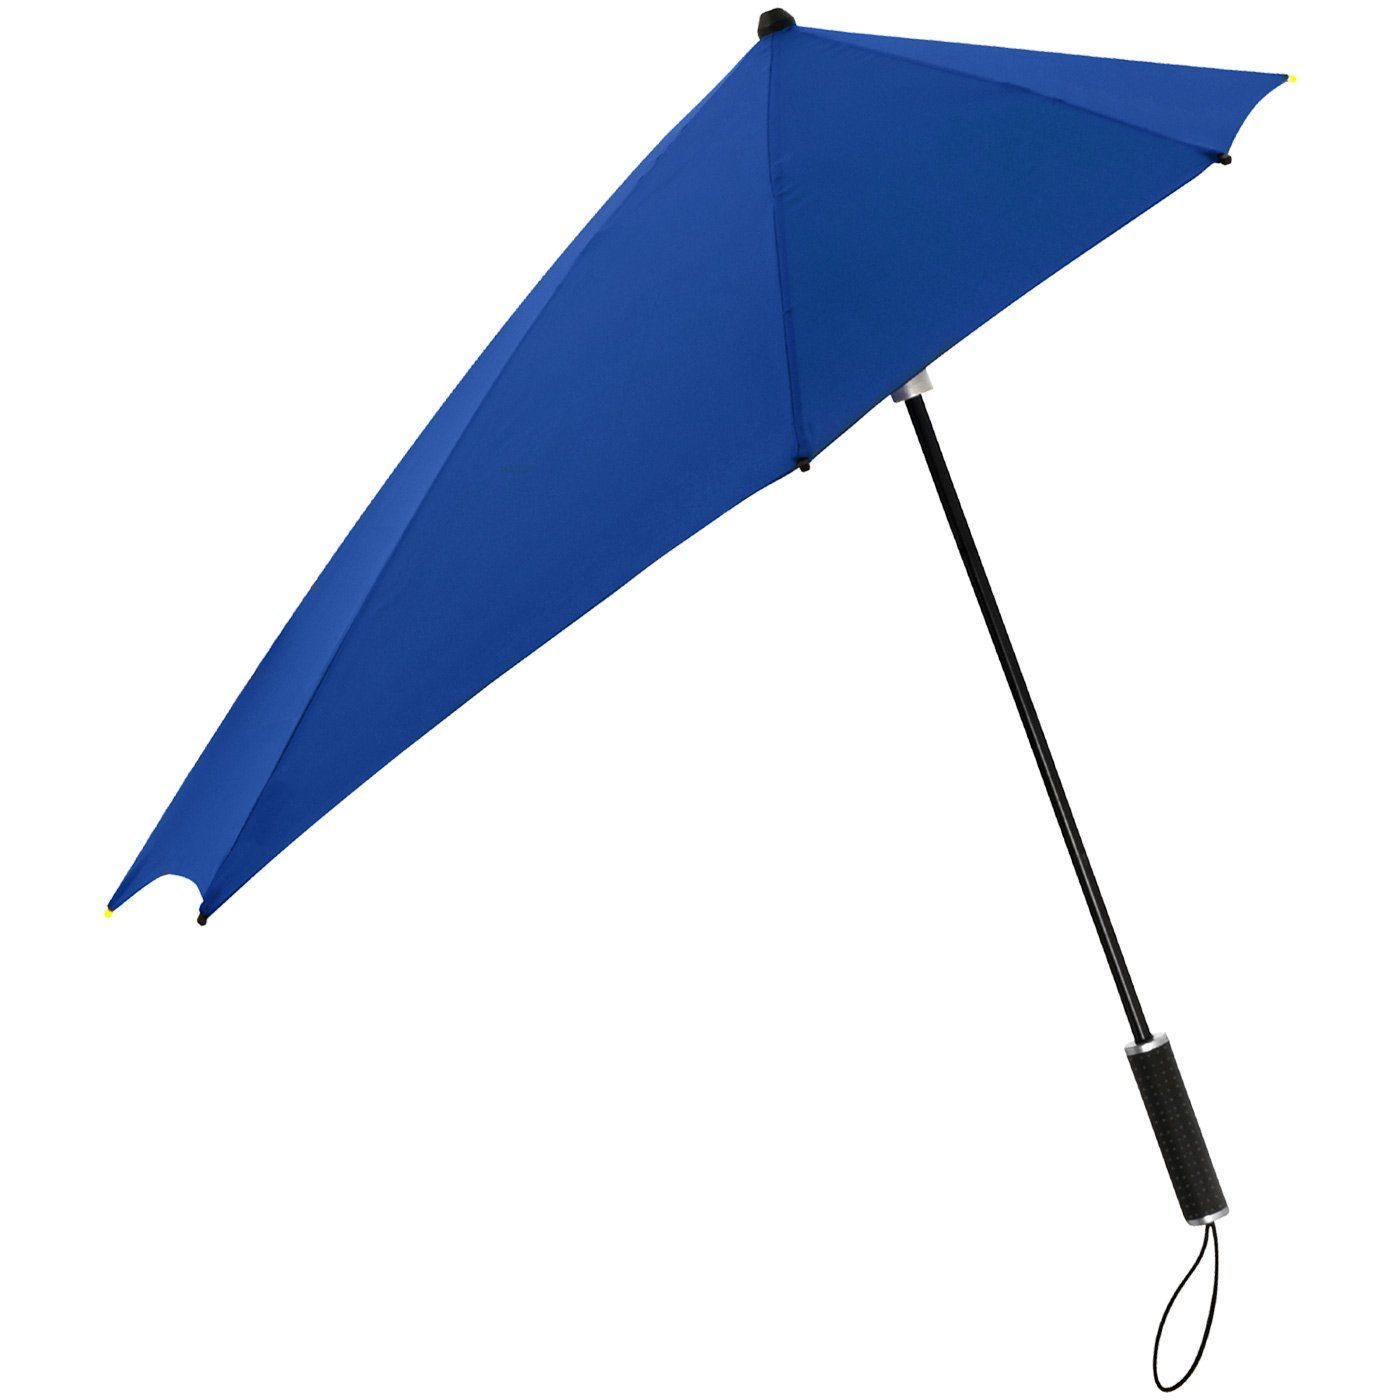 Schirm sich Stockregenschirm Form seine hält durch in aus bis der besondere Wind, Regenschirm, den navy Impliva 100 zu aerodynamischer km/h dreht STORMaxi Sturmschirm